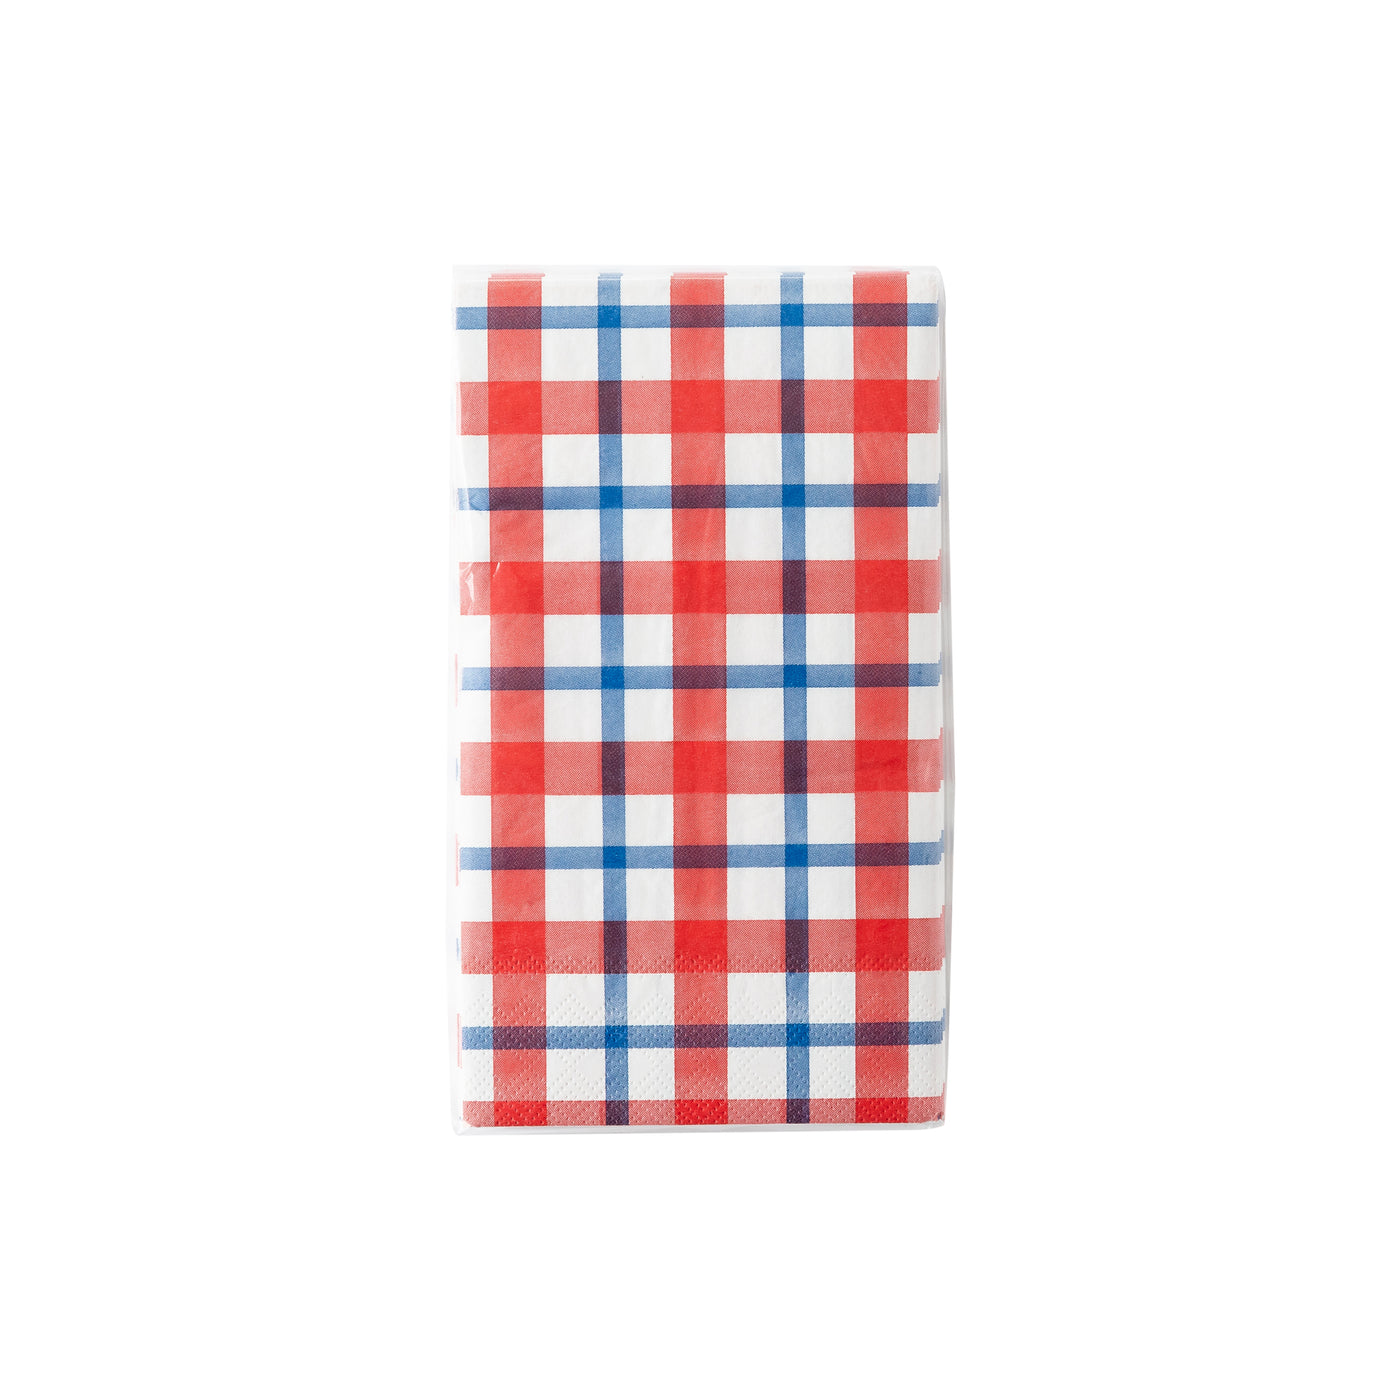 PLTS364B-MME - Striped Plaid Paper Guest Towel Napkin